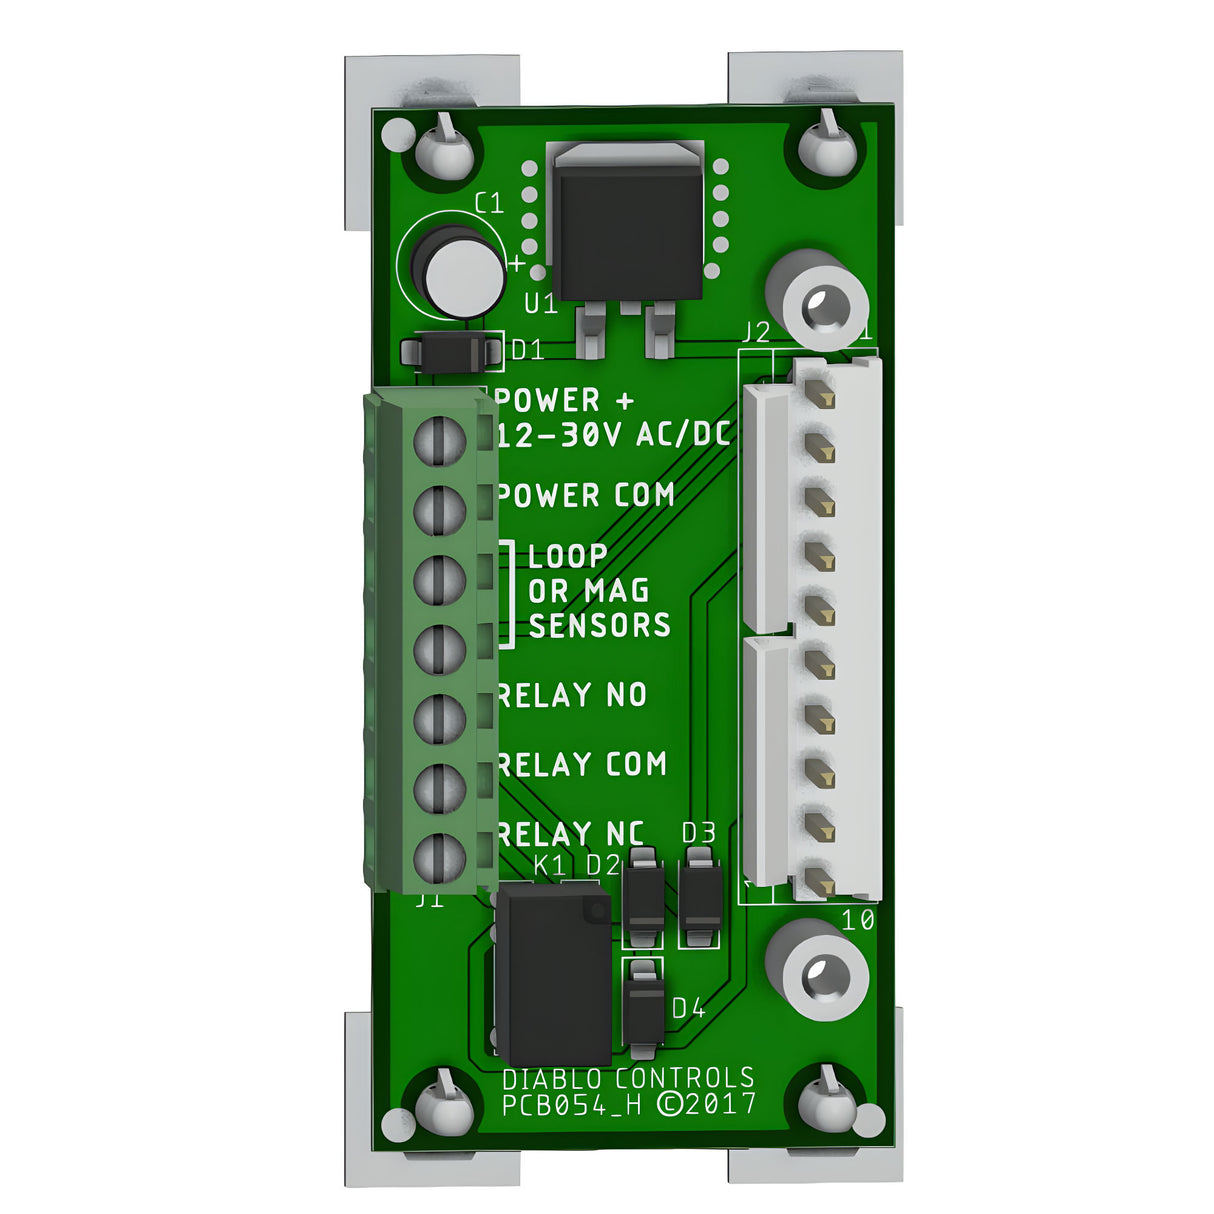 Diablo RK-1R Loop Rack for Plug-In Loop Detectors